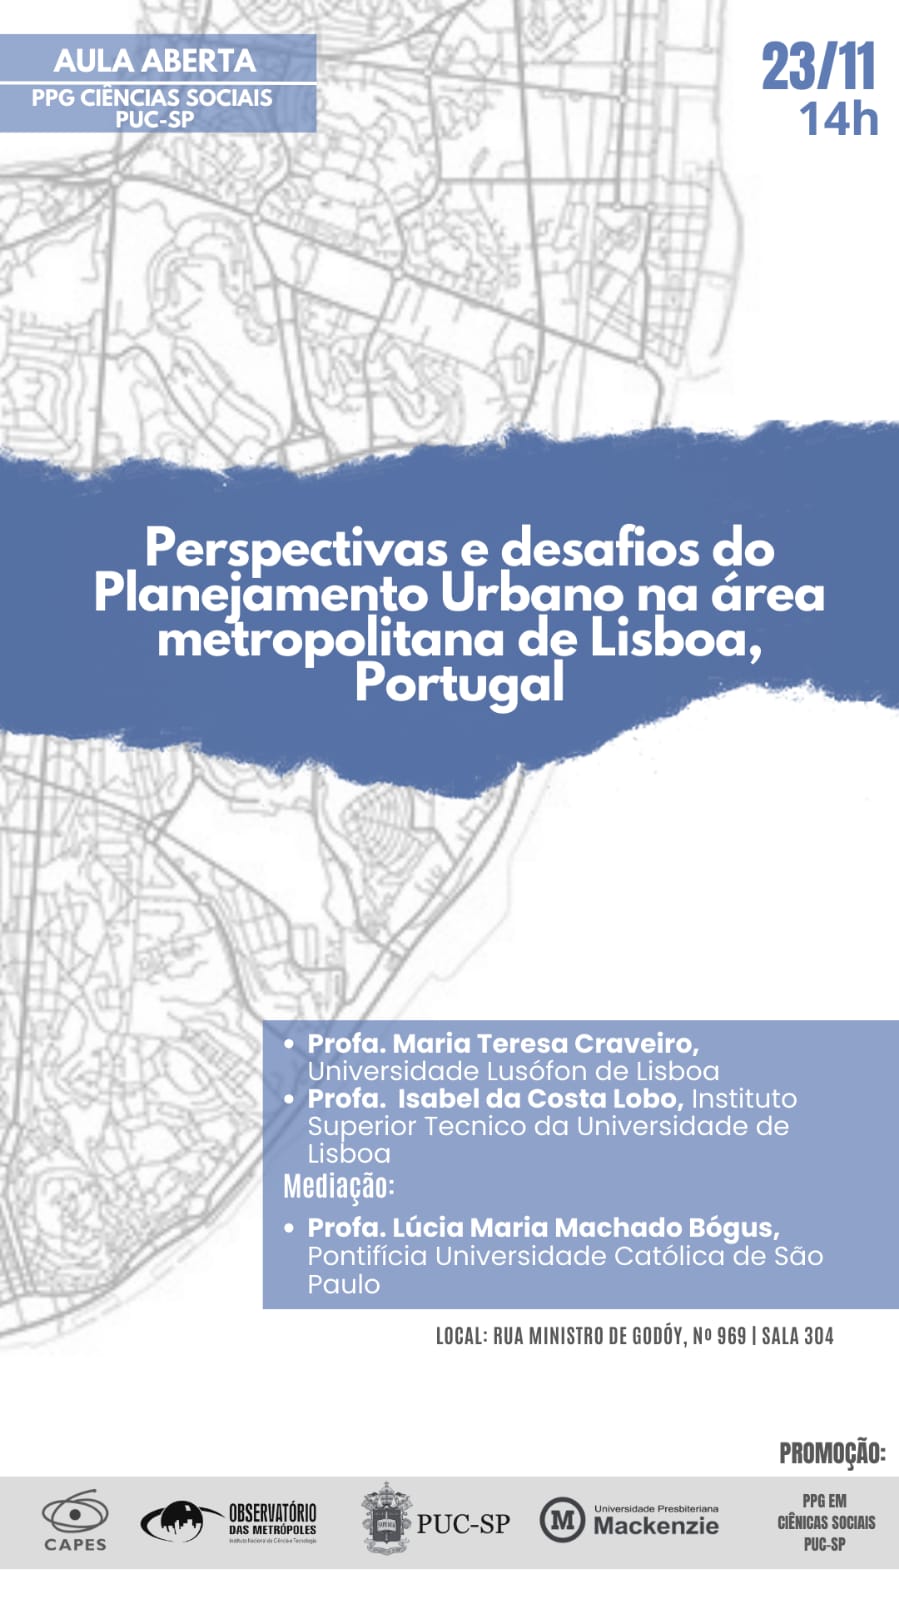 Aula Aberta em 23/11 - Perspectivas e desafios do Planejamento Urbano na área metropolitana de Lisboa, Portugal.